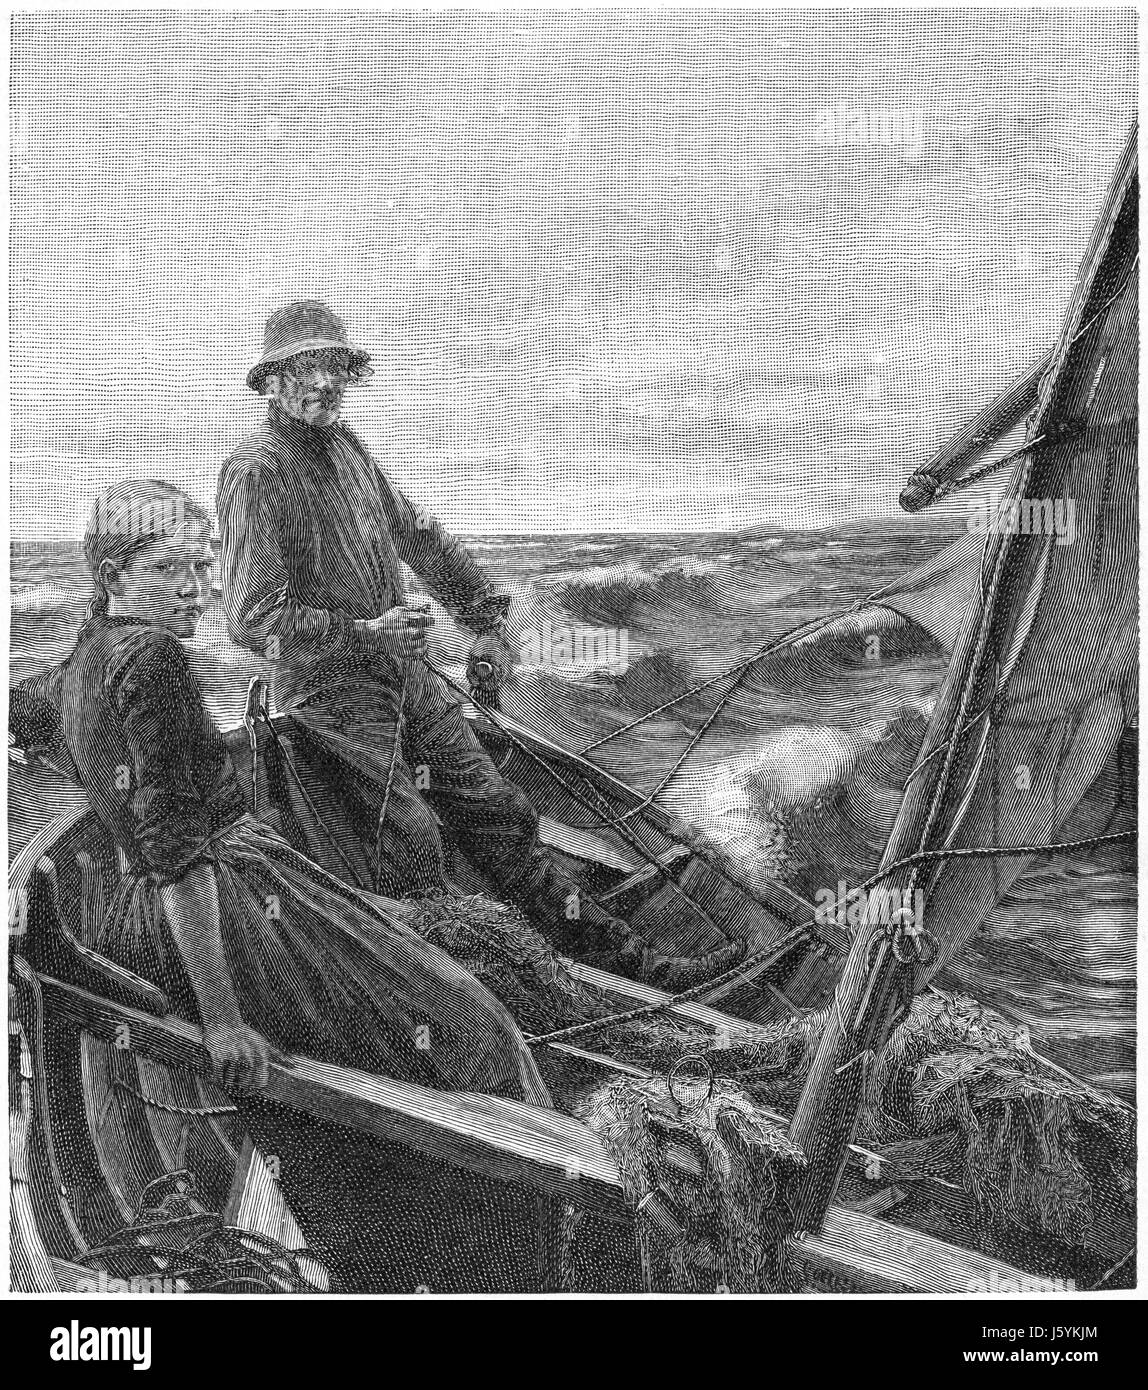 Paisaje urbano, el Golfo de Finlandia, Helsinki, Finlandia, Harper's New Monthly Magazine, Ilustración, enero de 1891 Foto de stock